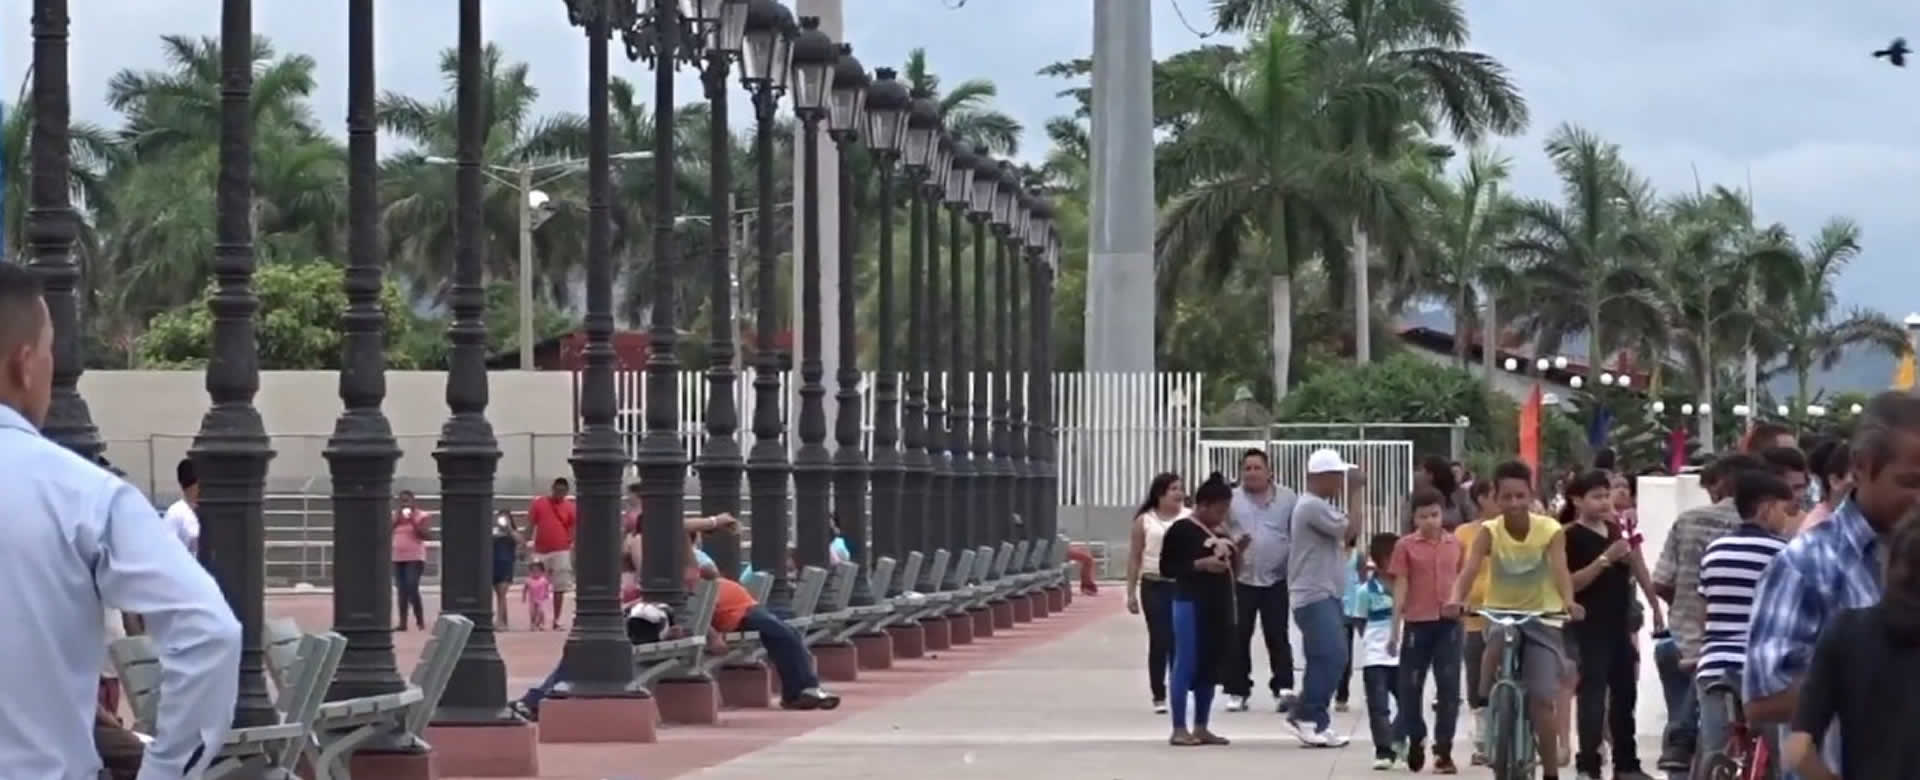 Managua ofrece opciones de recreación para este fin de semana Patrio